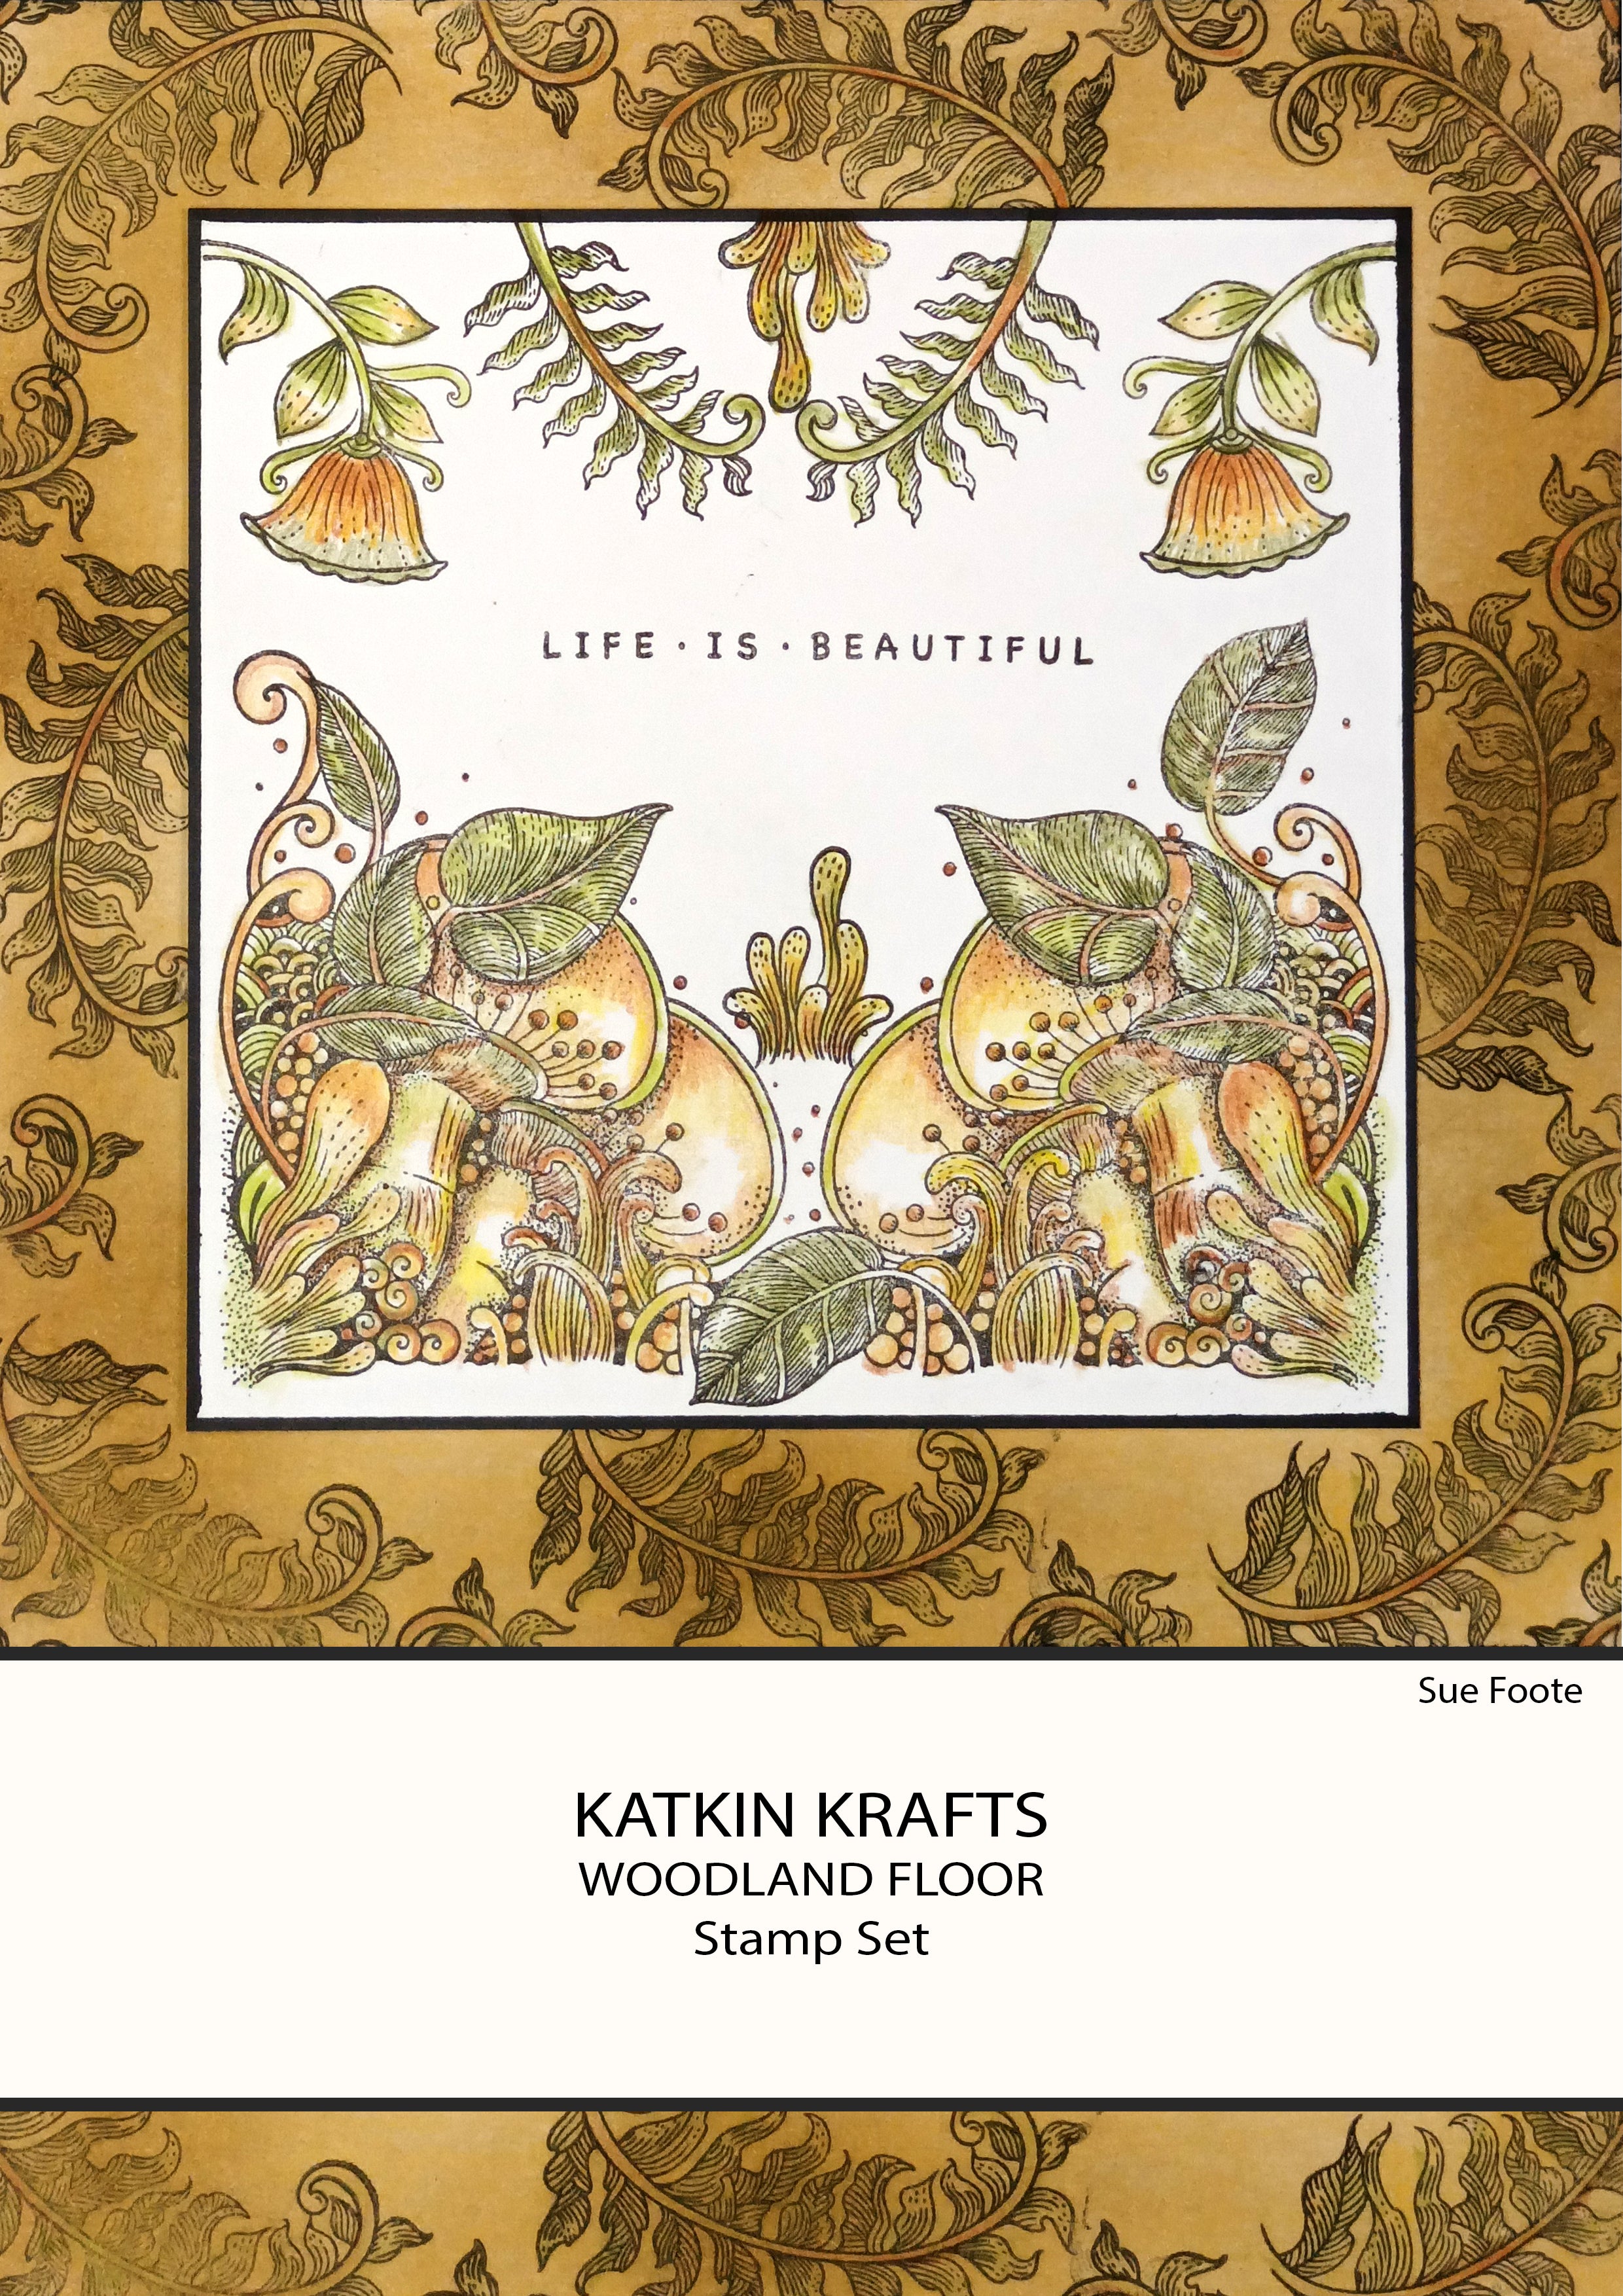 Katkin Krafts Woodland Floor 6 in x 8 in Clear Stamp Set